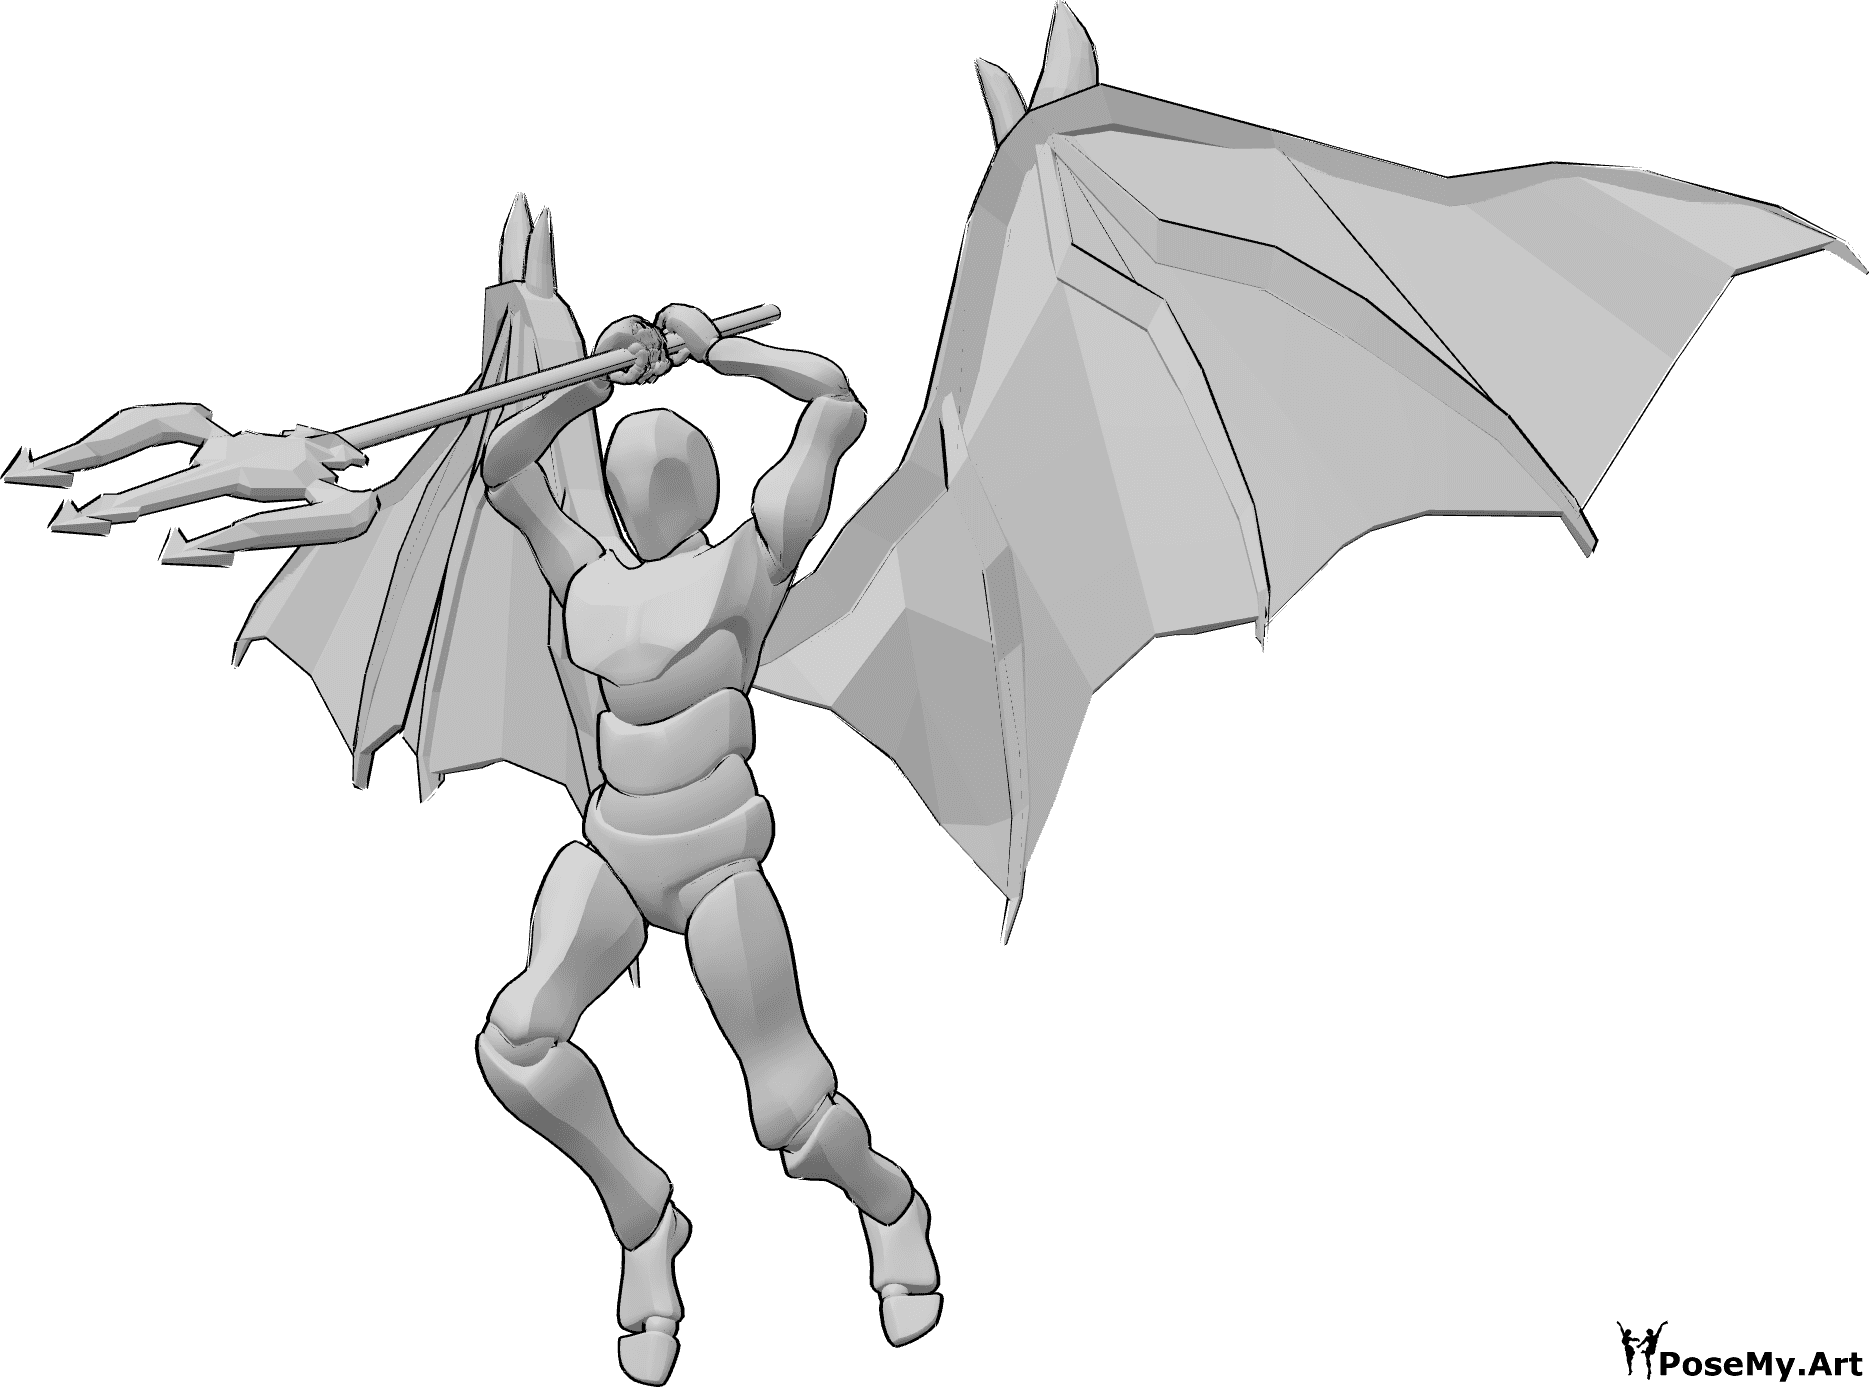 Referencia de poses- Postura dinámica de ataque demoníaco - Macho con alas de diablo está saltando alto para atacar, sosteniendo su tridente con ambas manos por encima de su cabeza